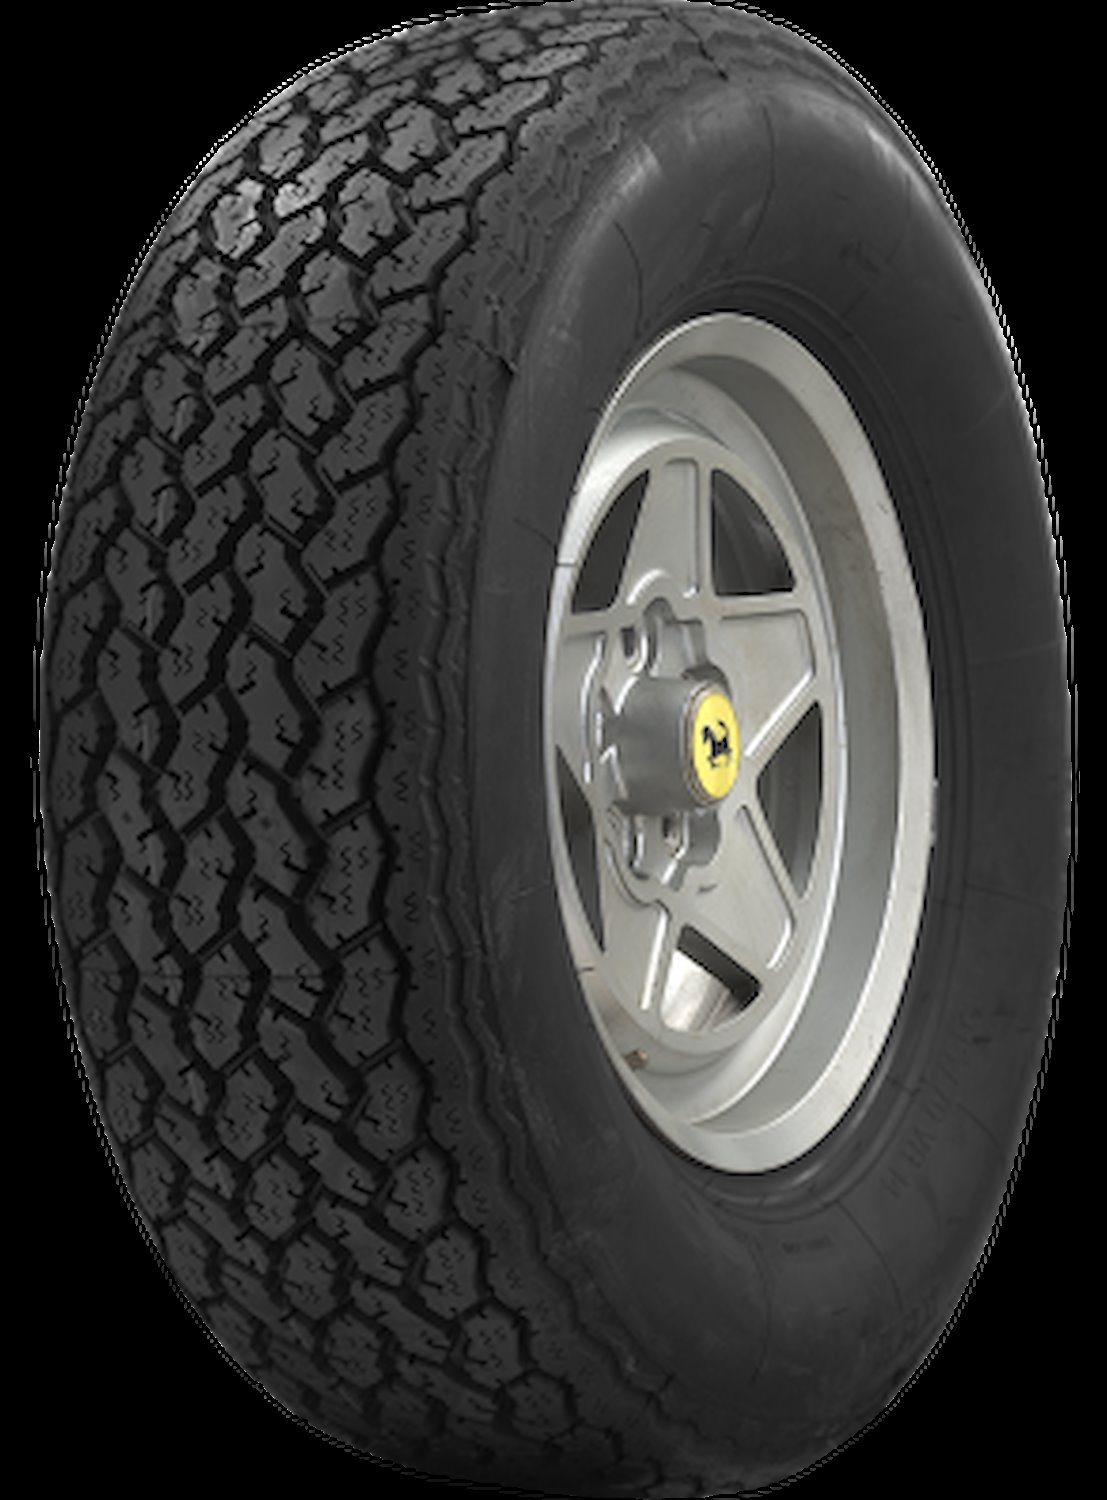 55570 Tire, Michelin XWX, 205/70VR14 89W